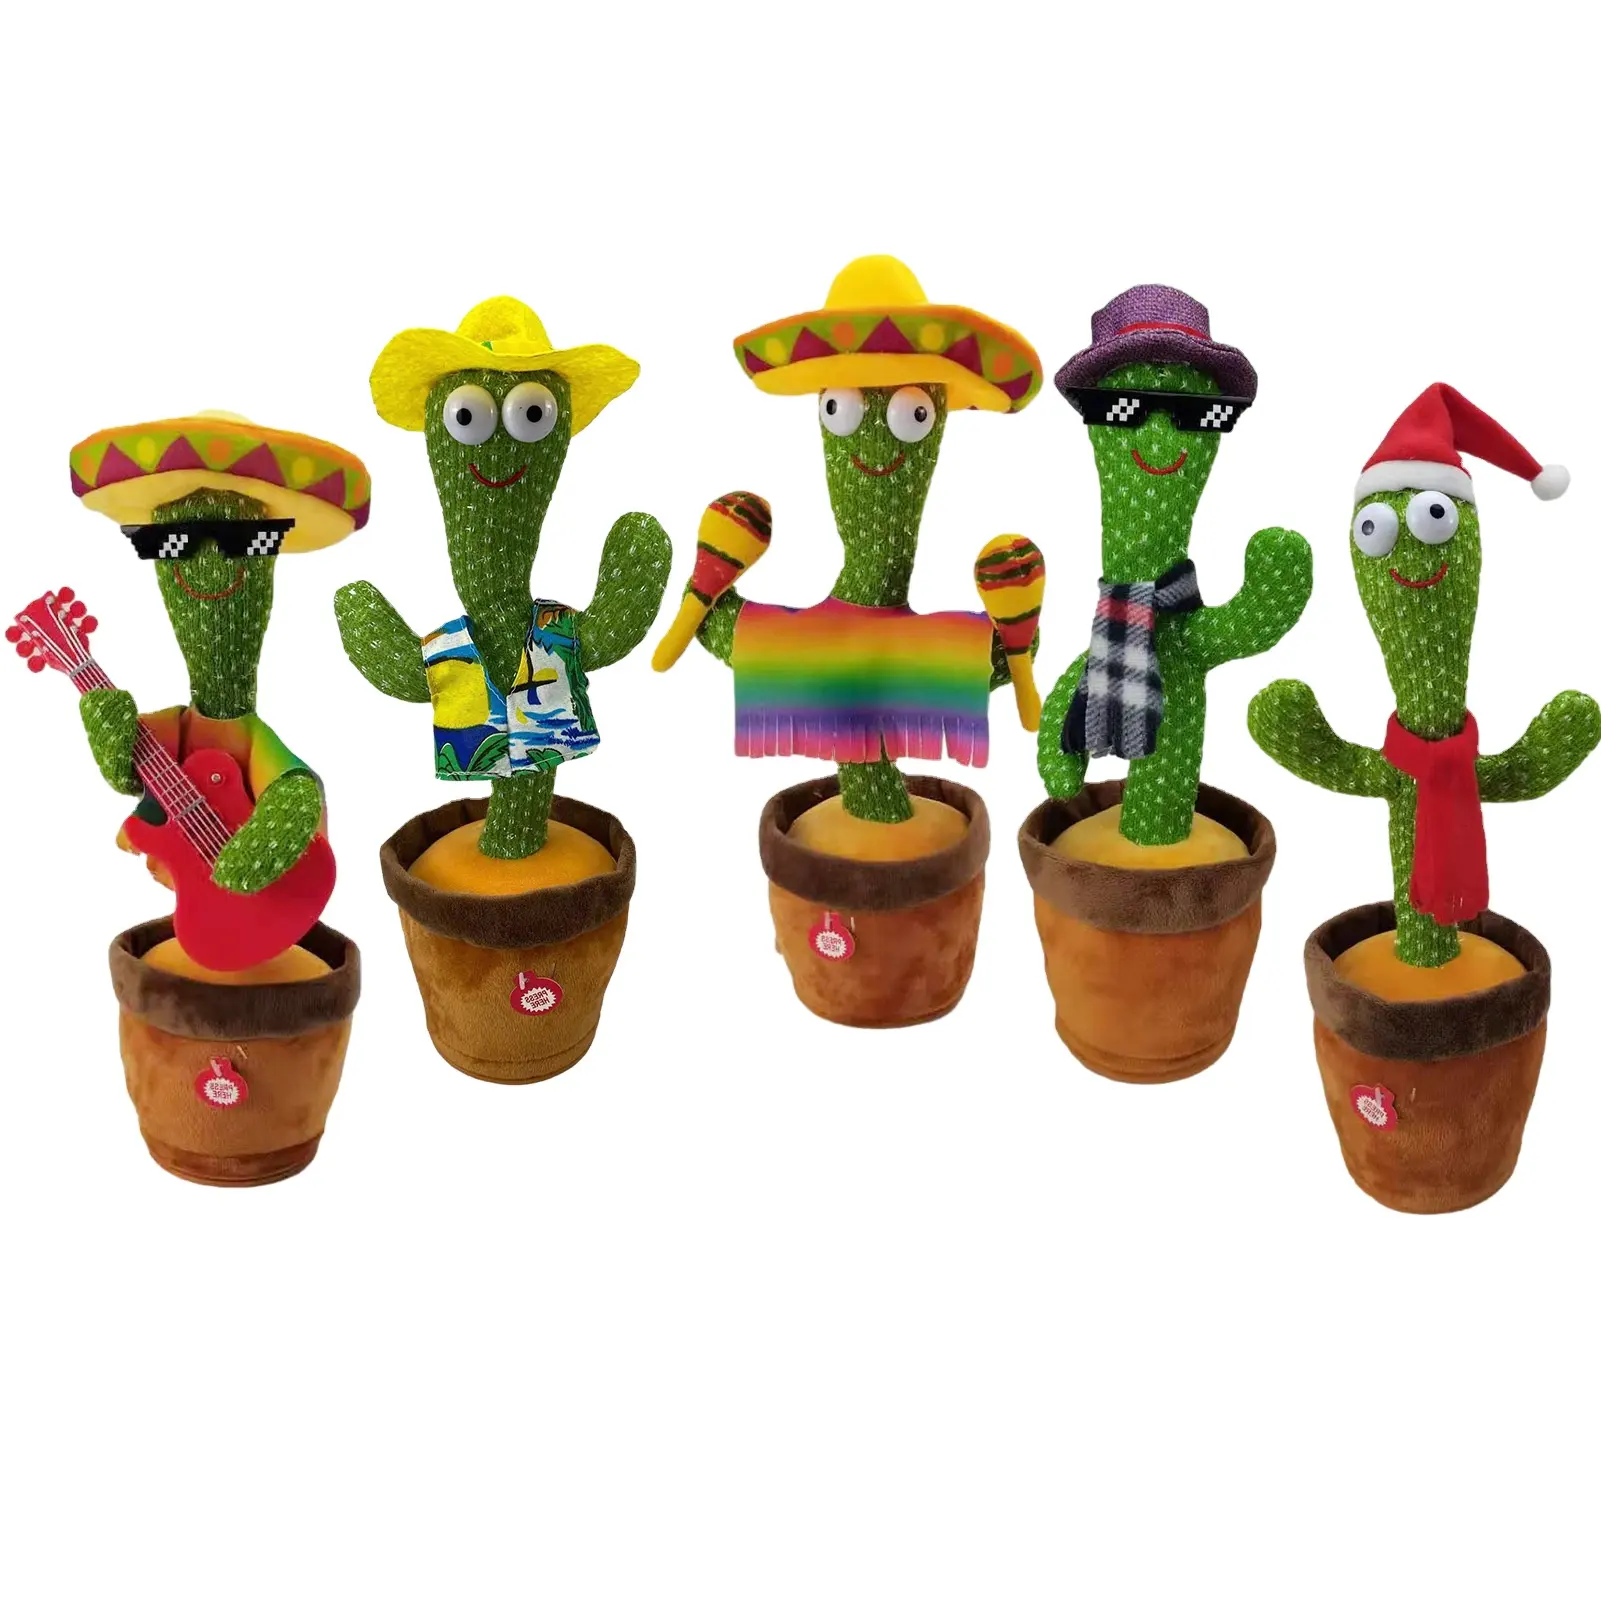 Tänzer Cactus Electronic Singing Club Tanzen Kaktus Plüschtiere Lustige Kaktus Lautsprecher Kinder Pädagogische ausgestopfte Plüschtiere